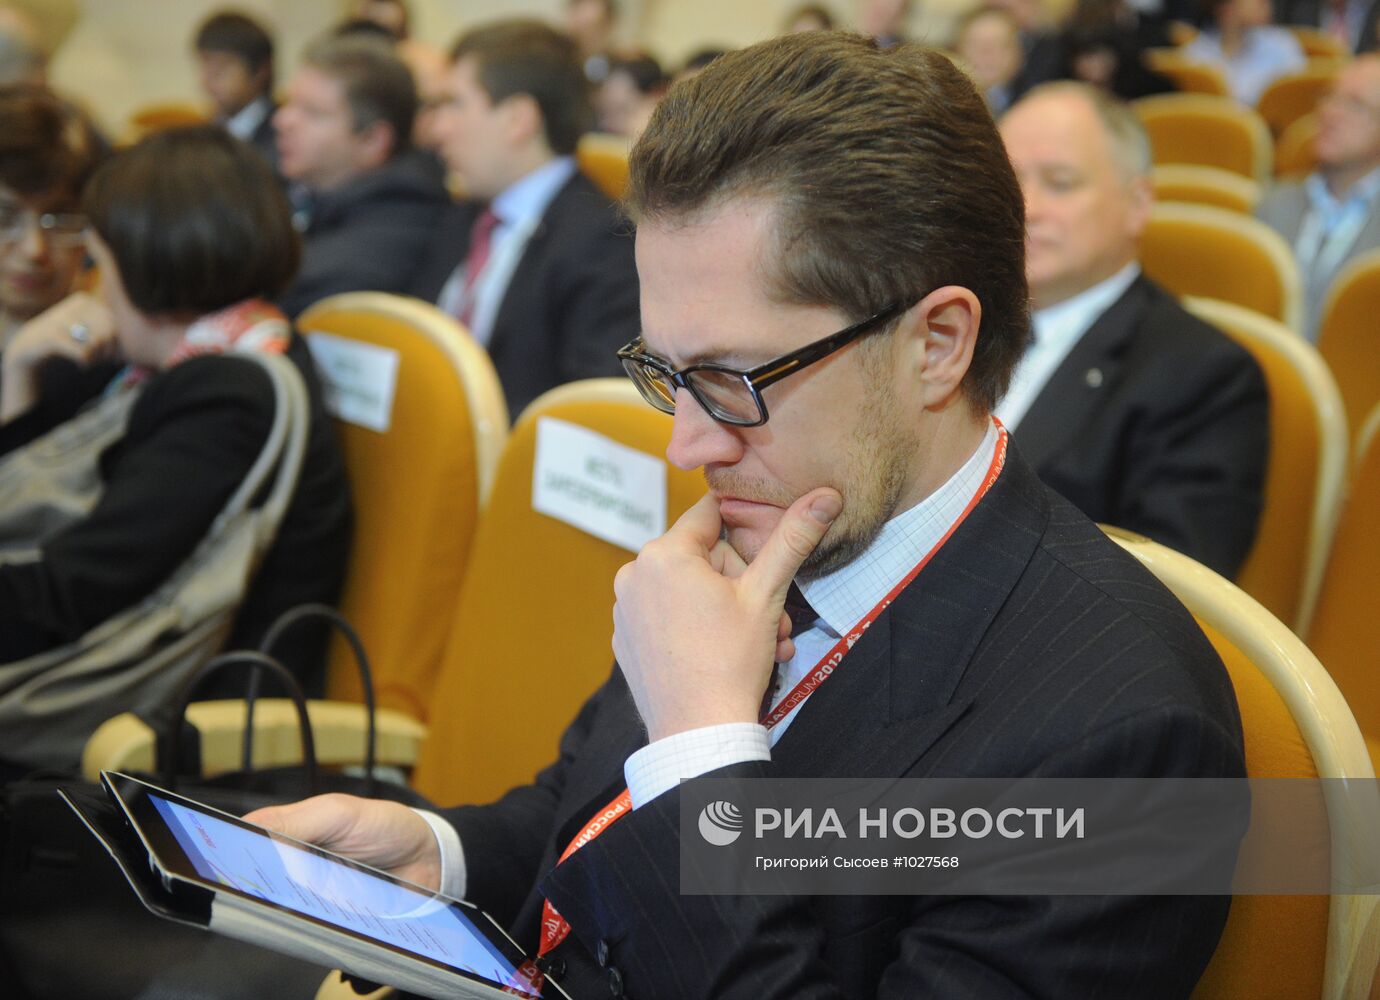 Форум Россия 2012. День первый